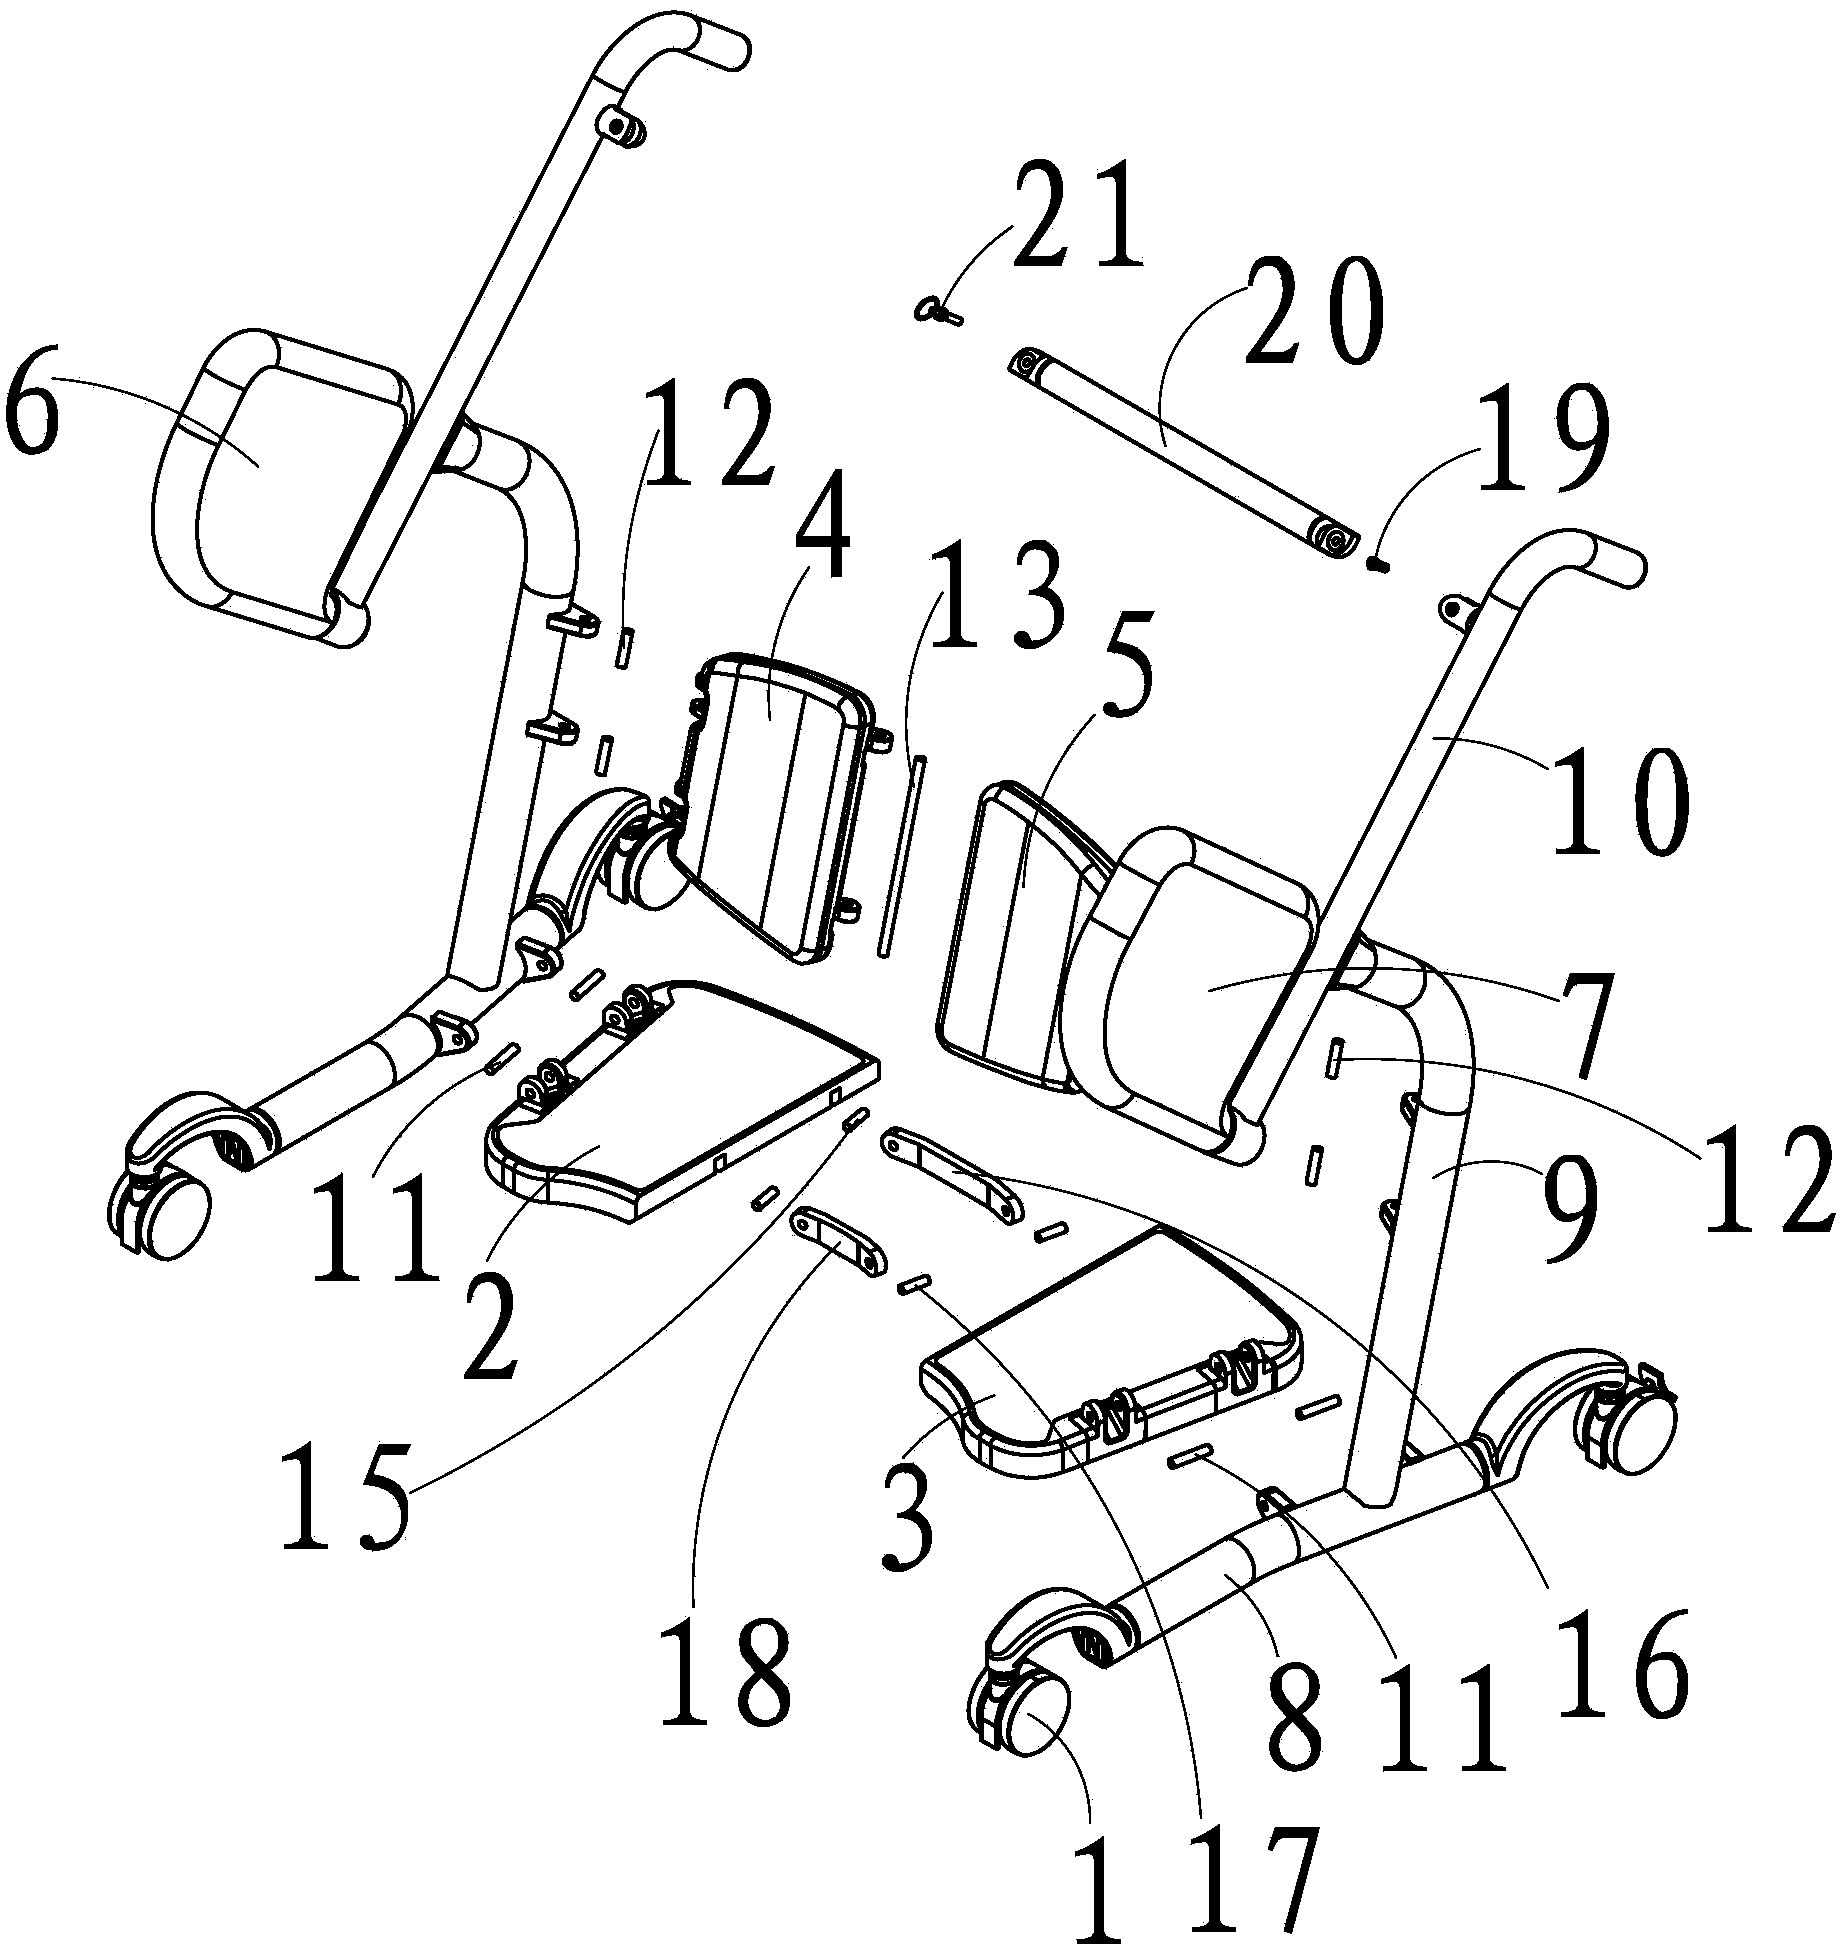 Foldable shifting vehicle